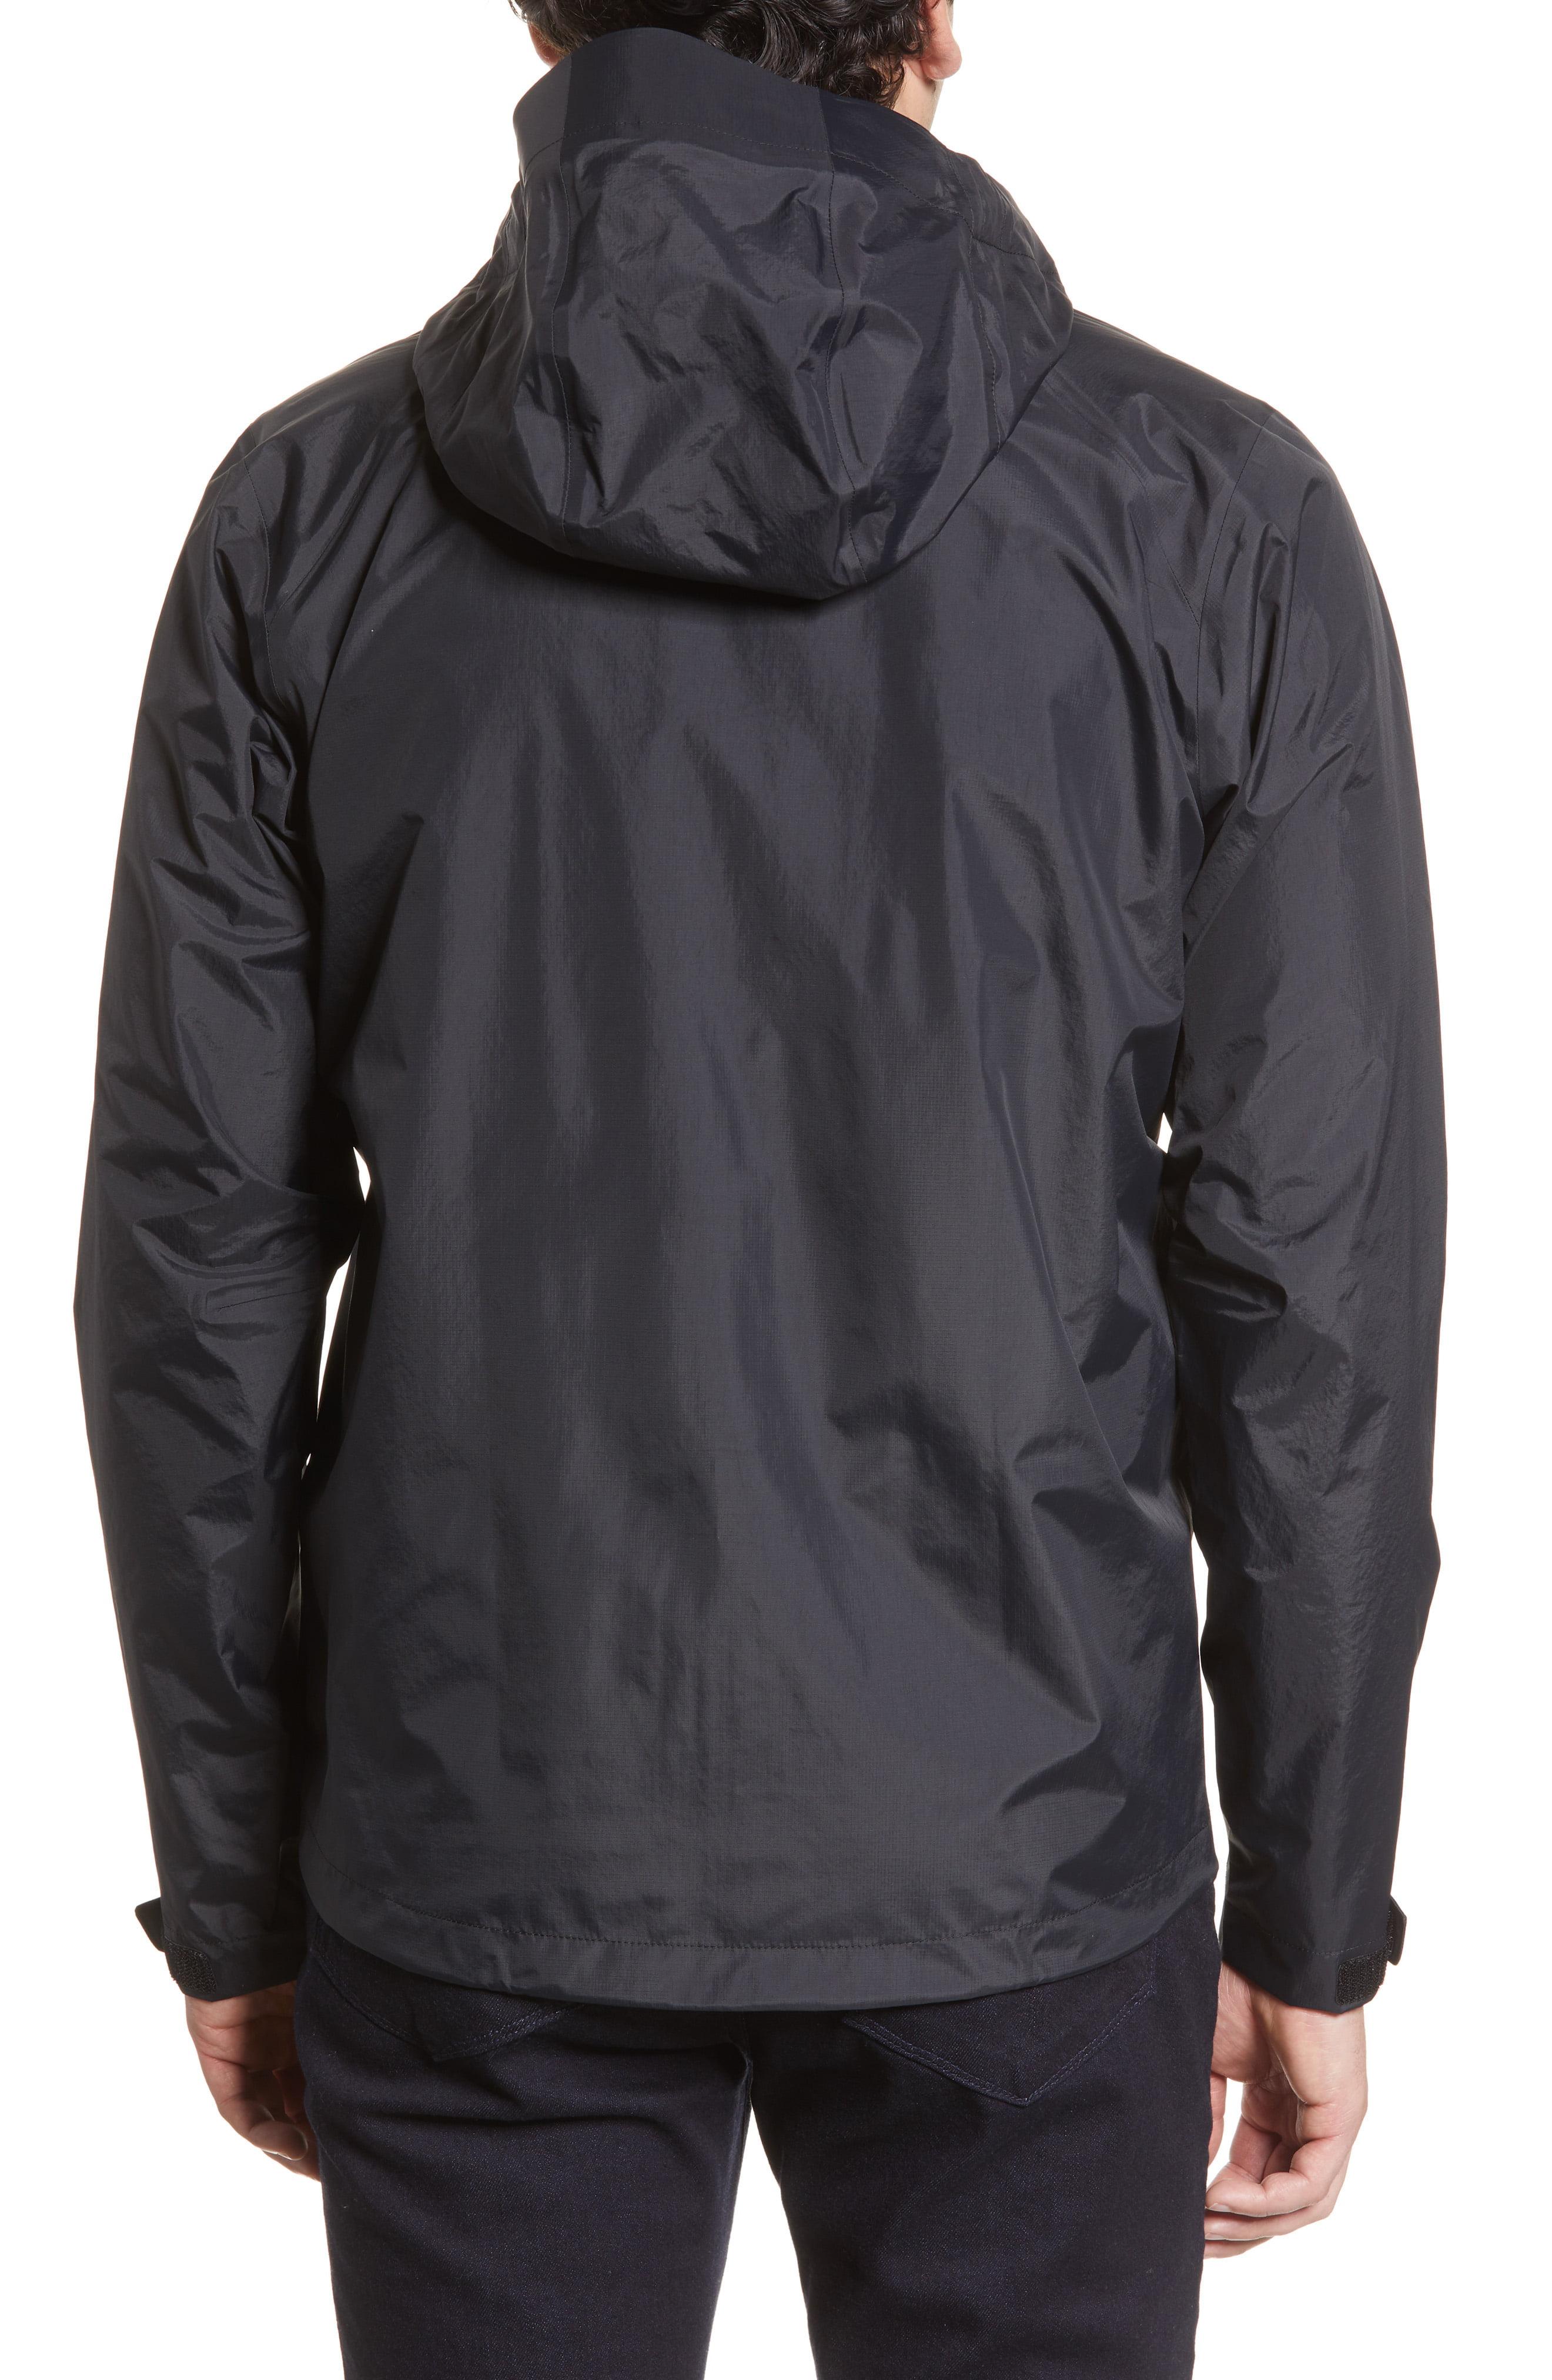 Patagonia Torrentshell 3l Packable Waterproof Jacket, Black for Men - Lyst